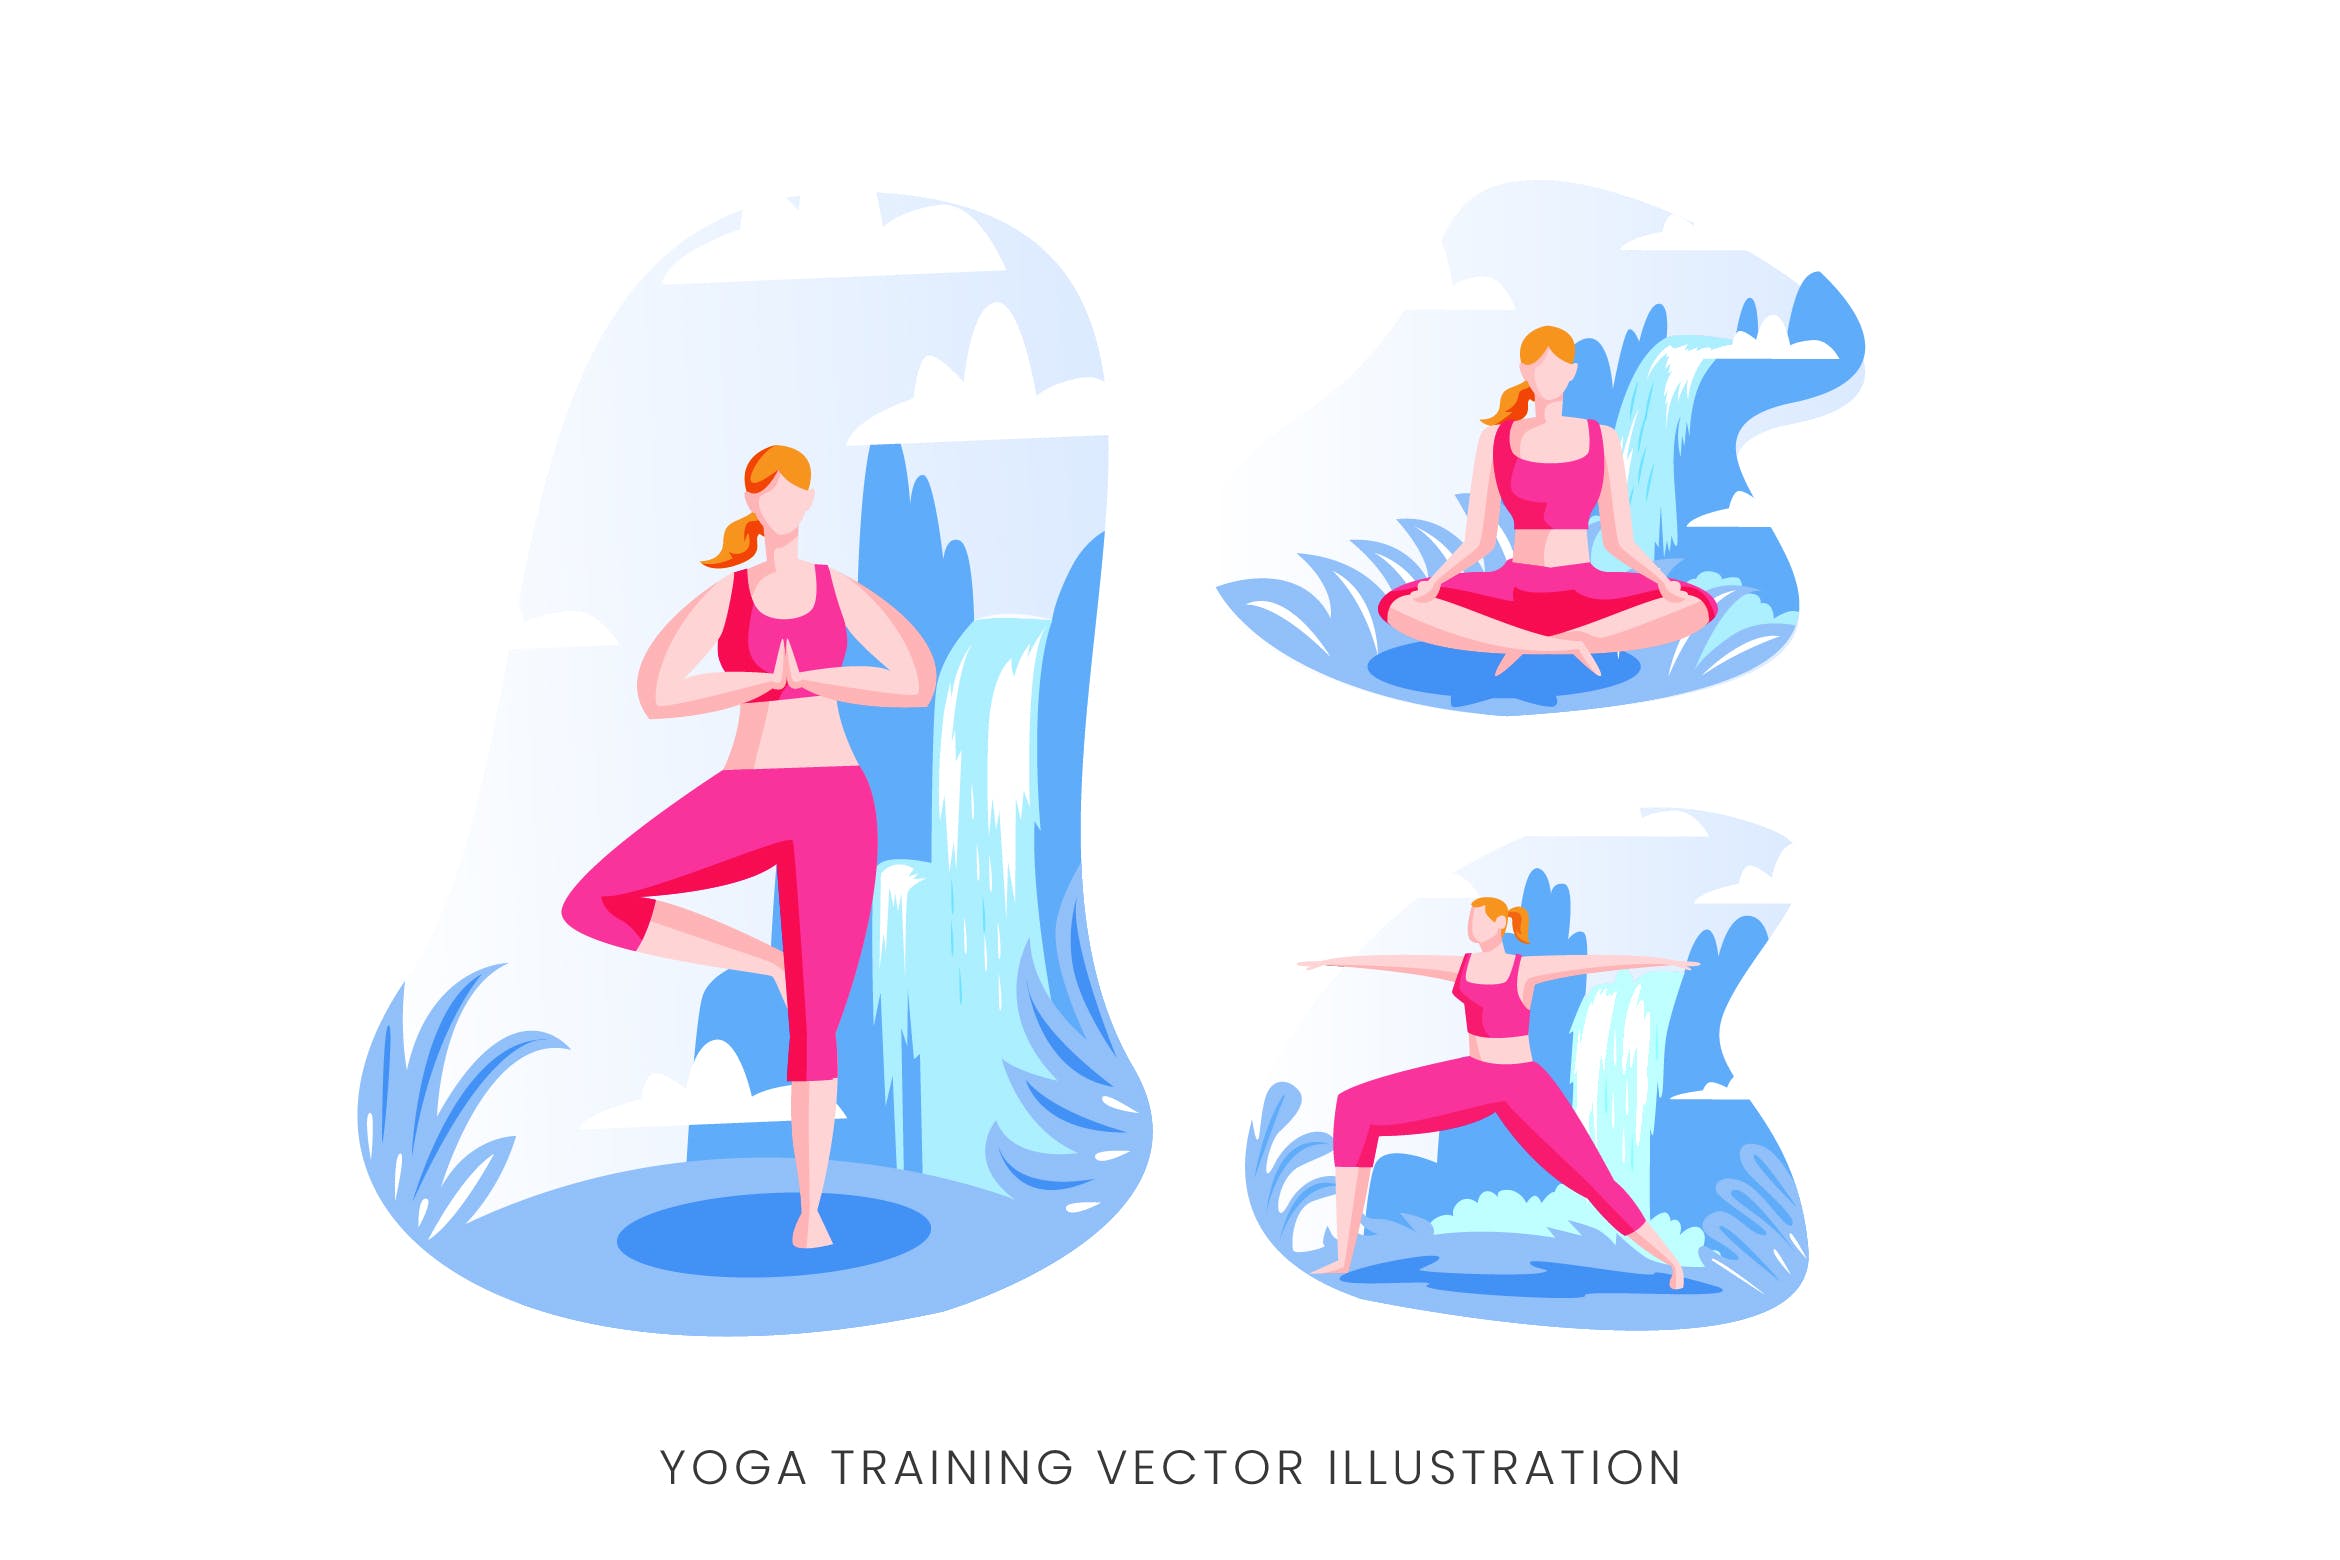 瑜伽训练人物形象矢量手绘16设计网精选设计素材 Yoga Training Vector Character Set插图